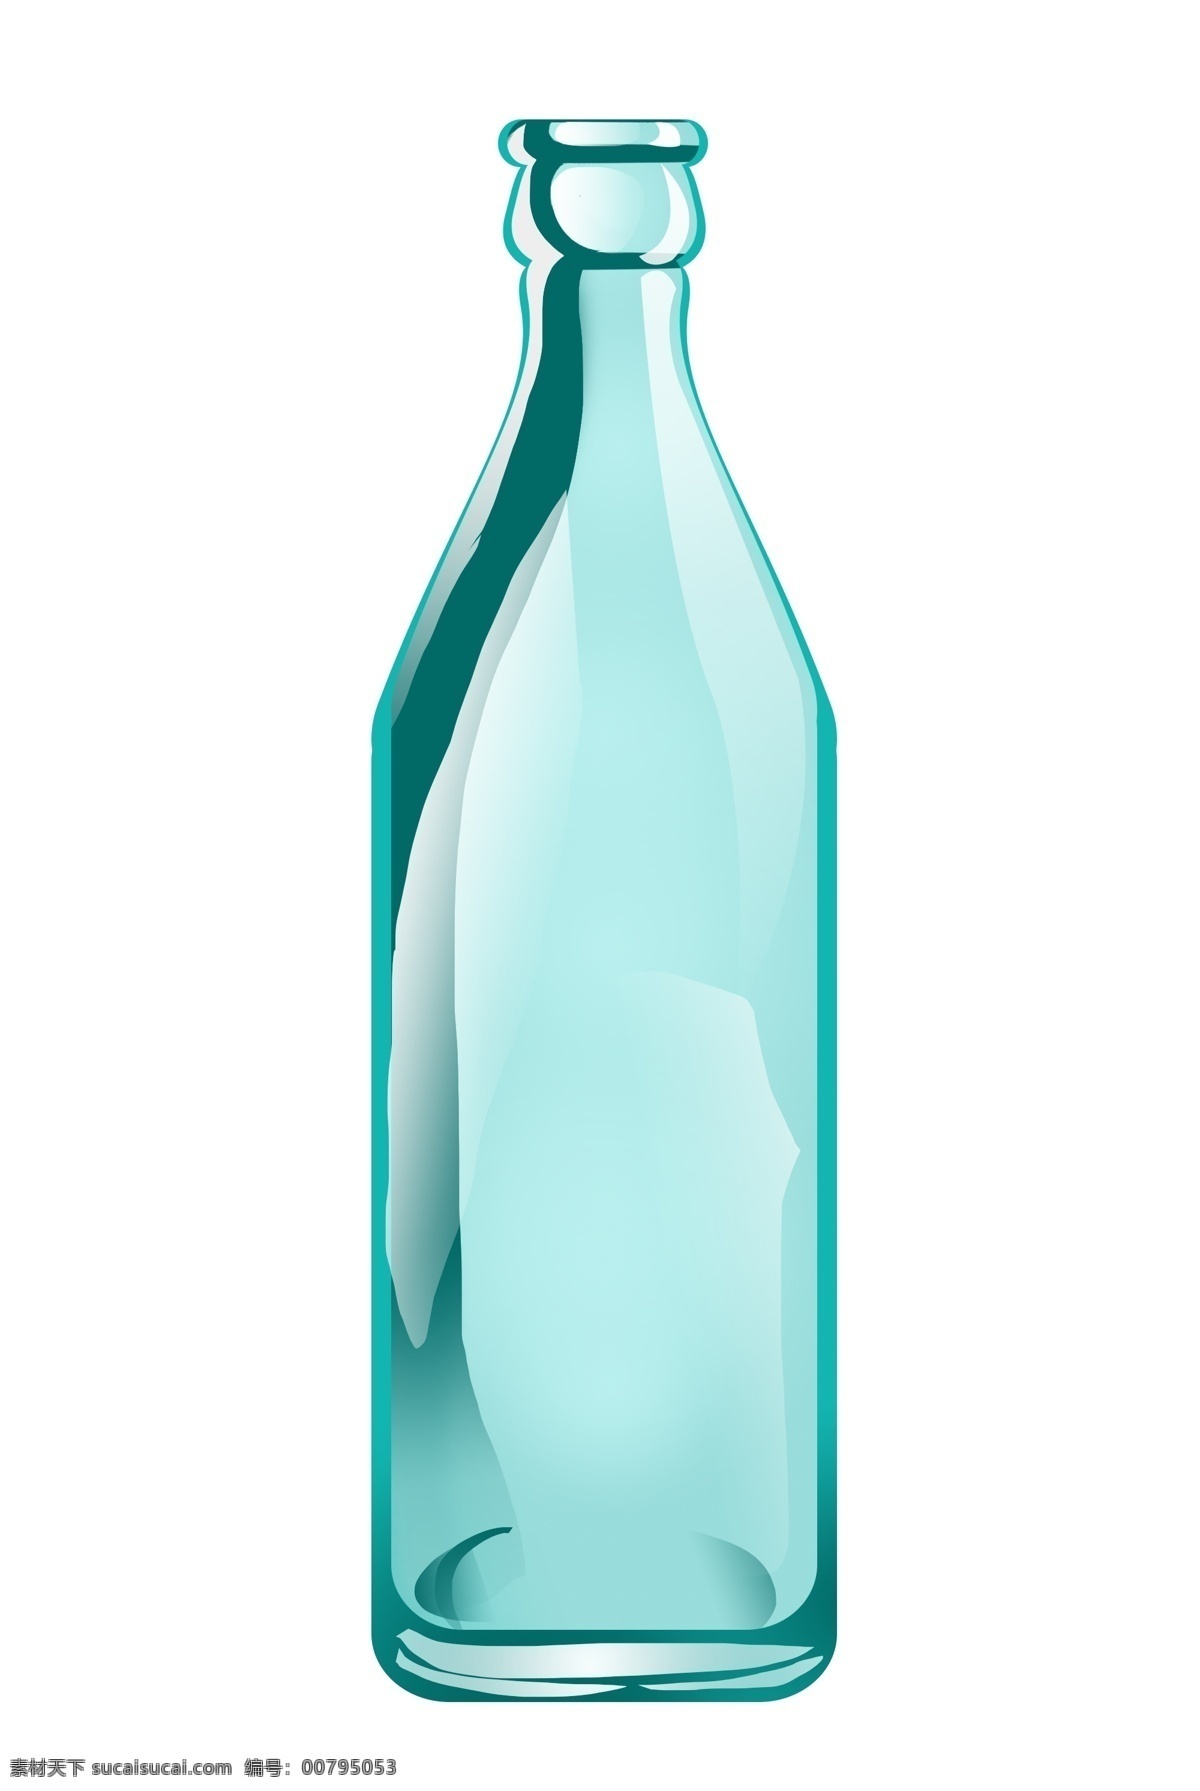 白酒 玻璃 瓶子 插画 白酒瓶子插画 透明玻璃瓶子 酒瓶插画 玻璃瓶 绿色玻璃瓶 酒瓶